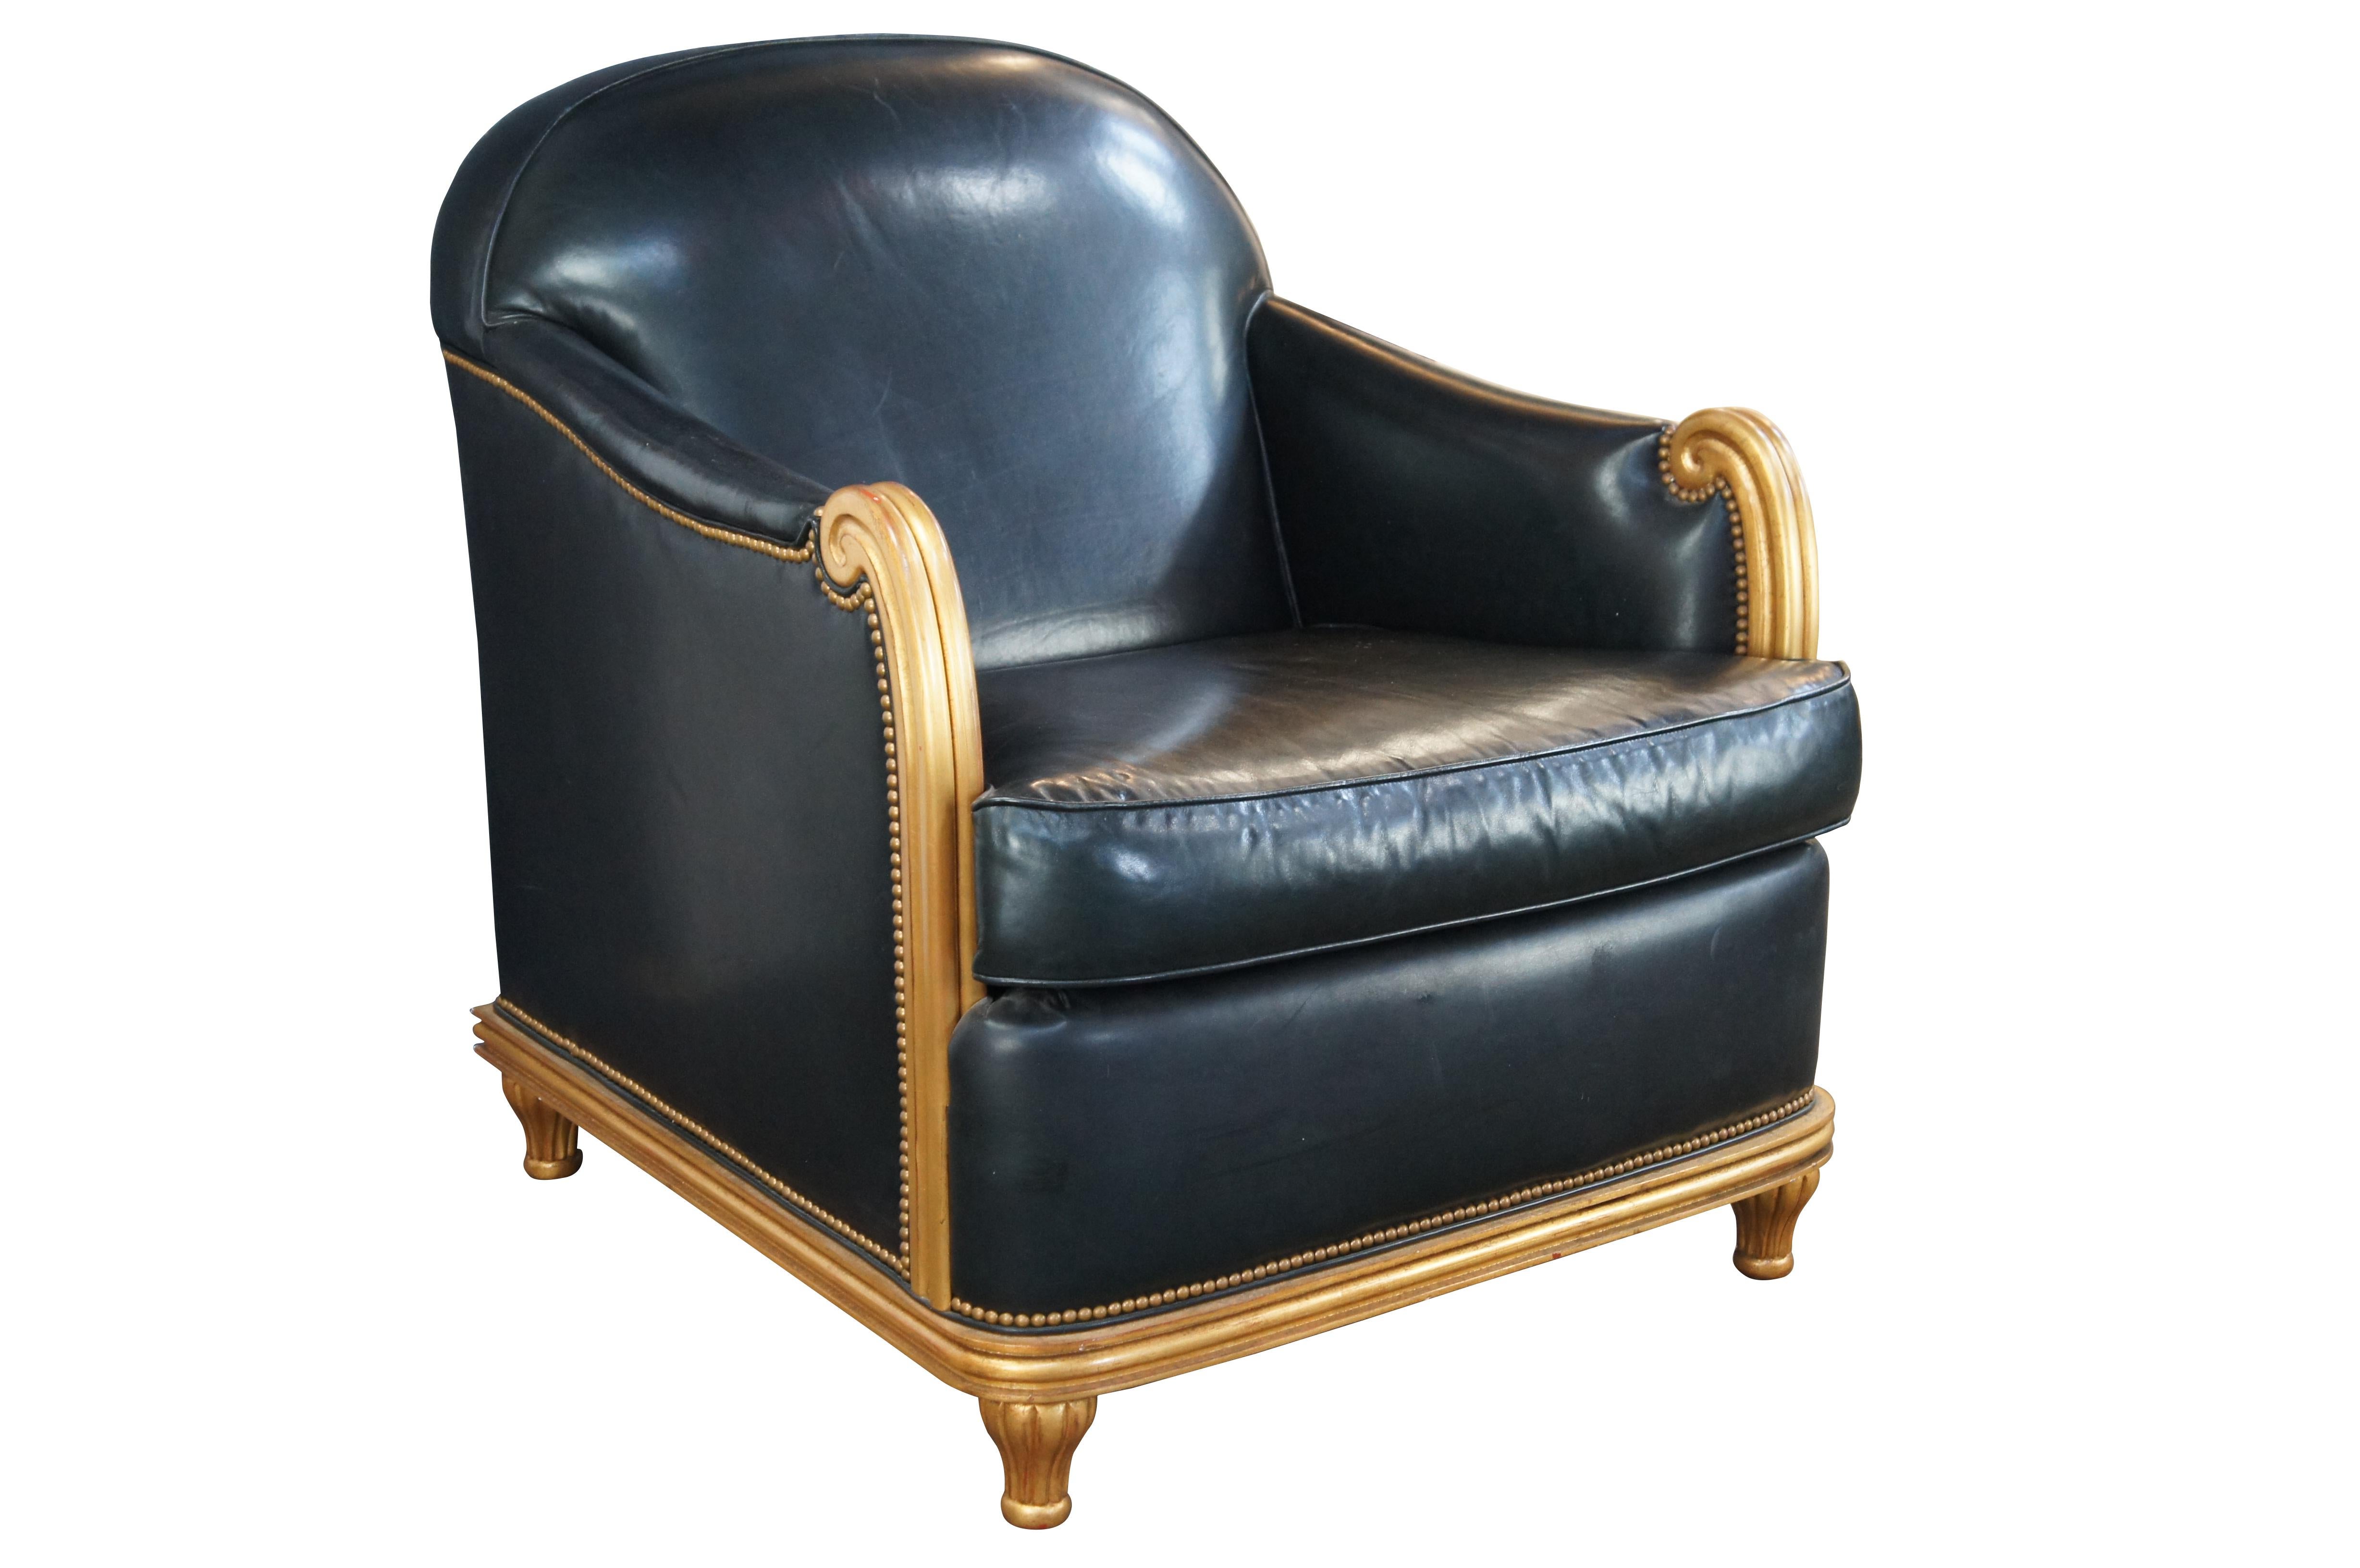 Fin du 20e siècle / début du 21e siècle Fauteuil club par Grafton Furniture. Le cadre est d'inspiration Art déco français, avec un dossier incurvé et des accoudoirs à volutes. La chaise est finie en or avec un revêtement en cuir noir et une